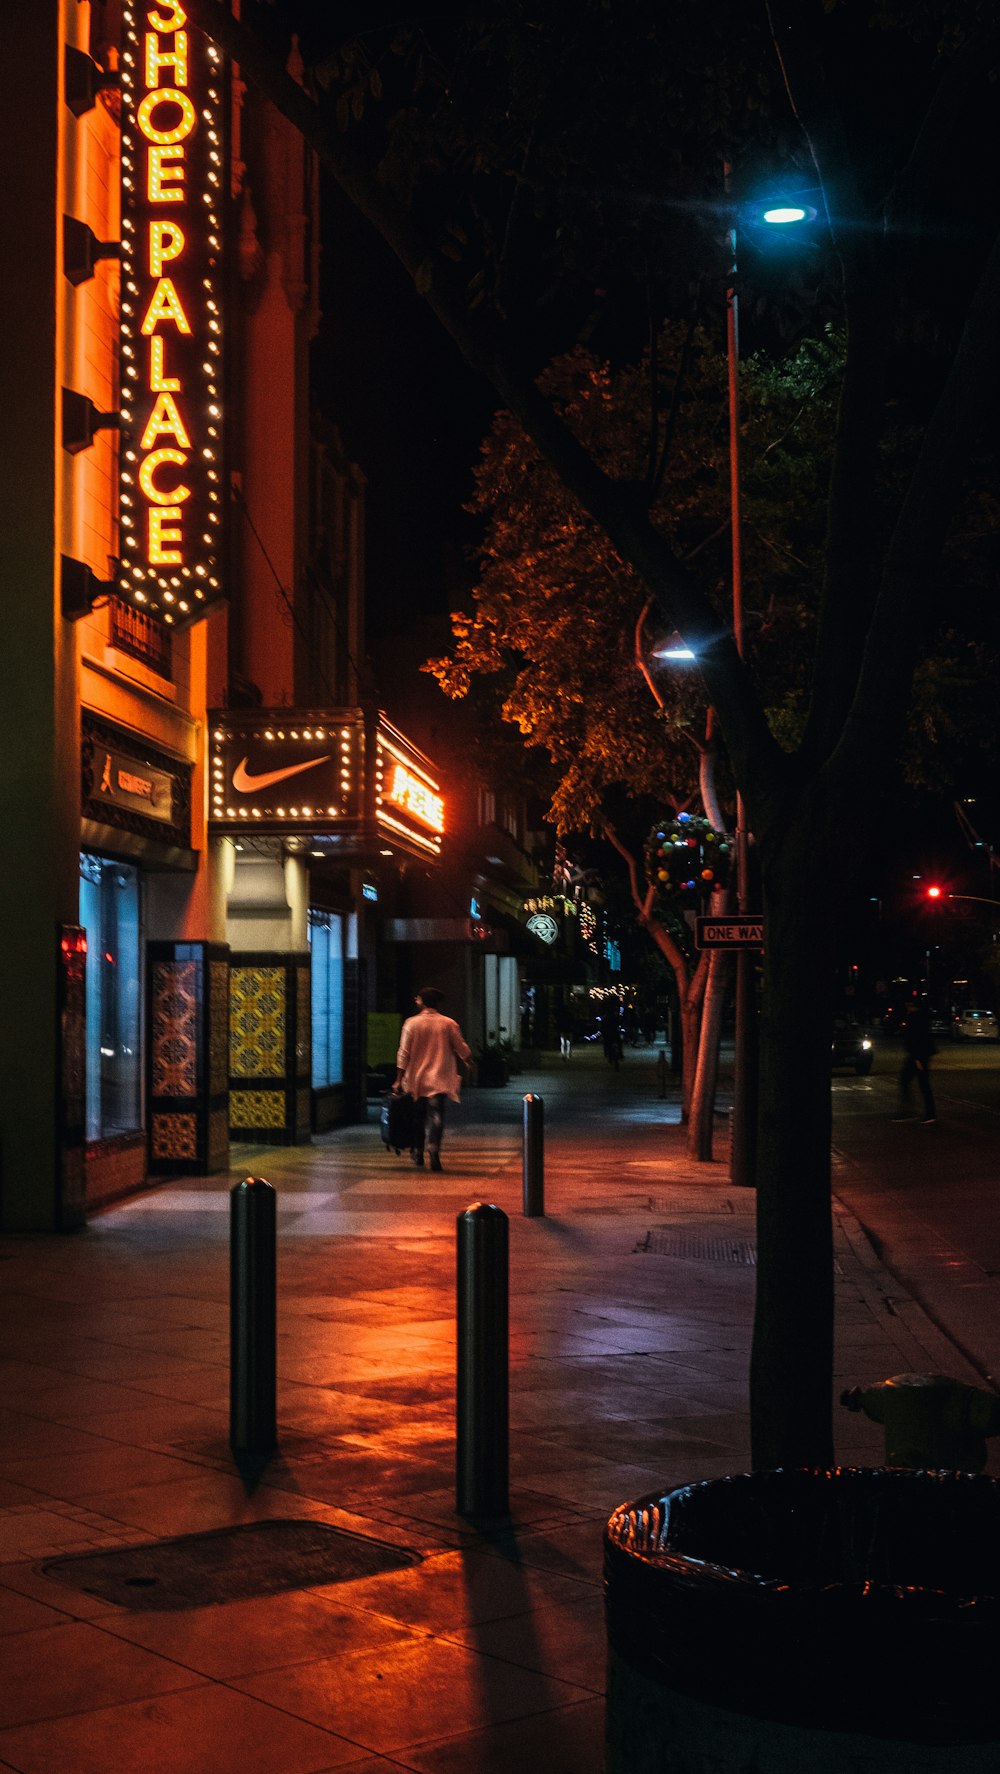 Foto de una persona caminando al lado de un escaparate durante la noche